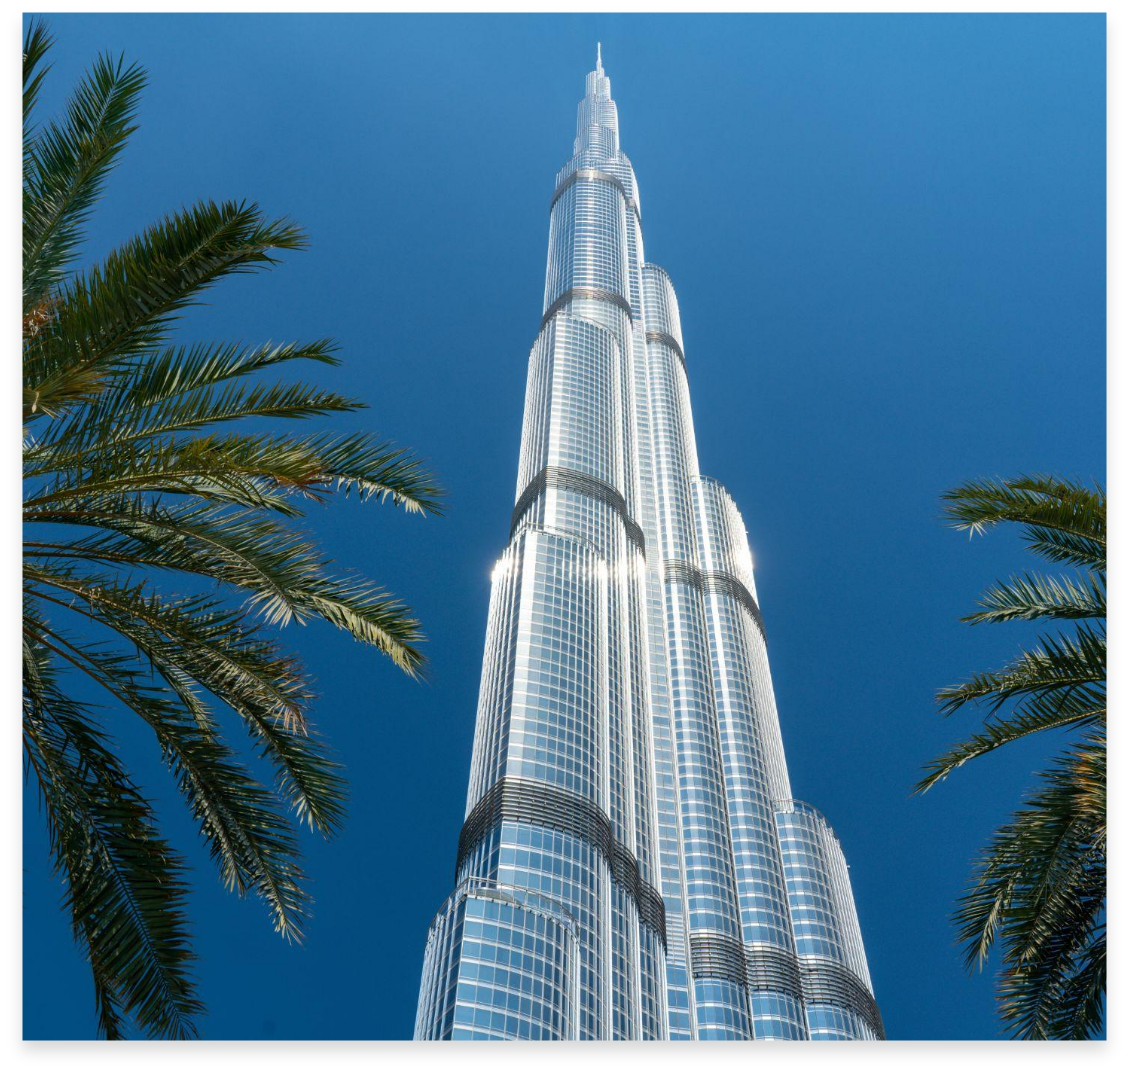  kiromarble project Burj Khalifa